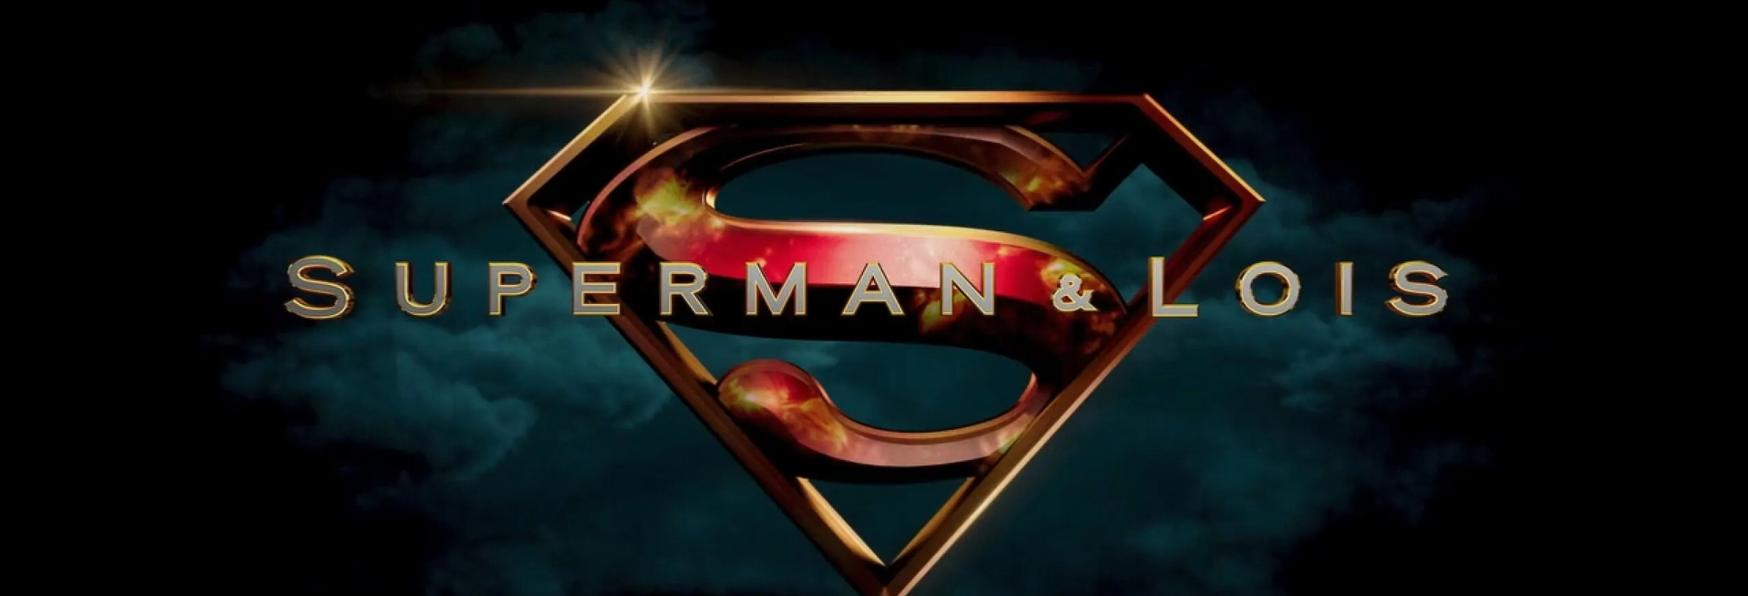 Superman & Lois 3: The CW rilascia il Primo Trailer della Stagione inedita